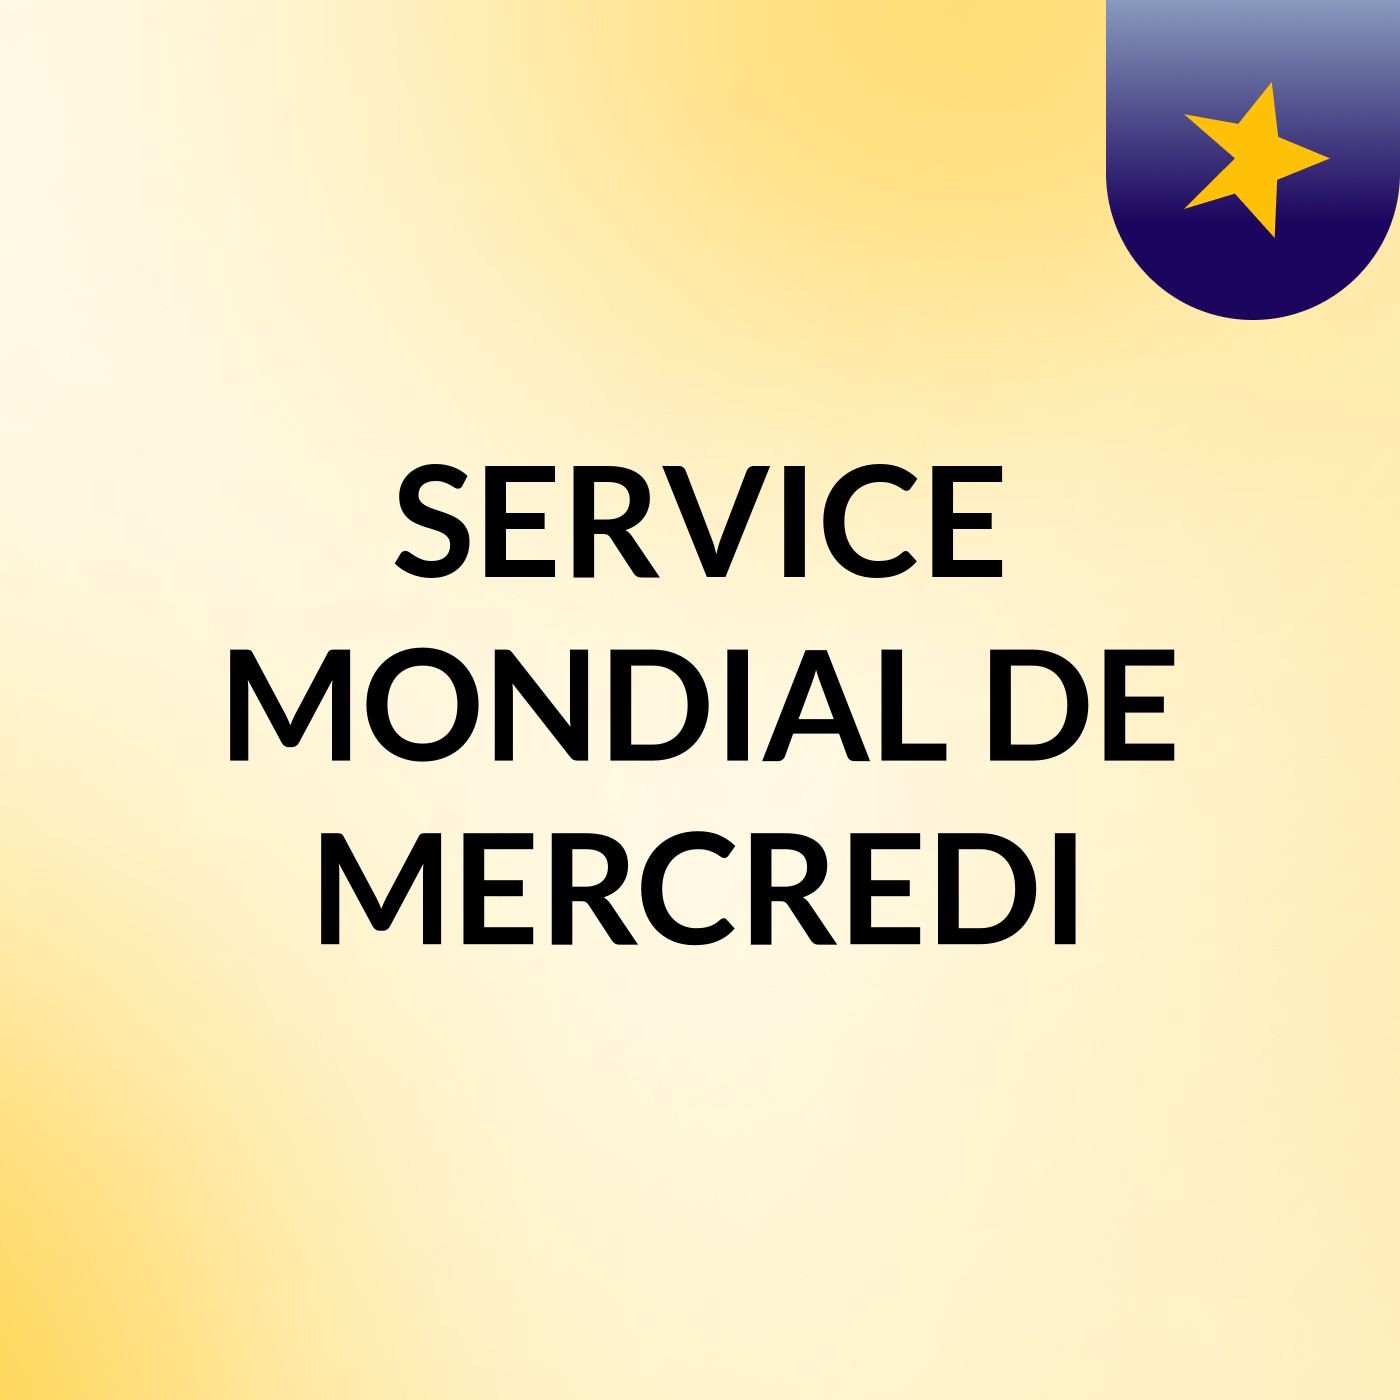 SERVICE MONDIAL DE MERCREDI